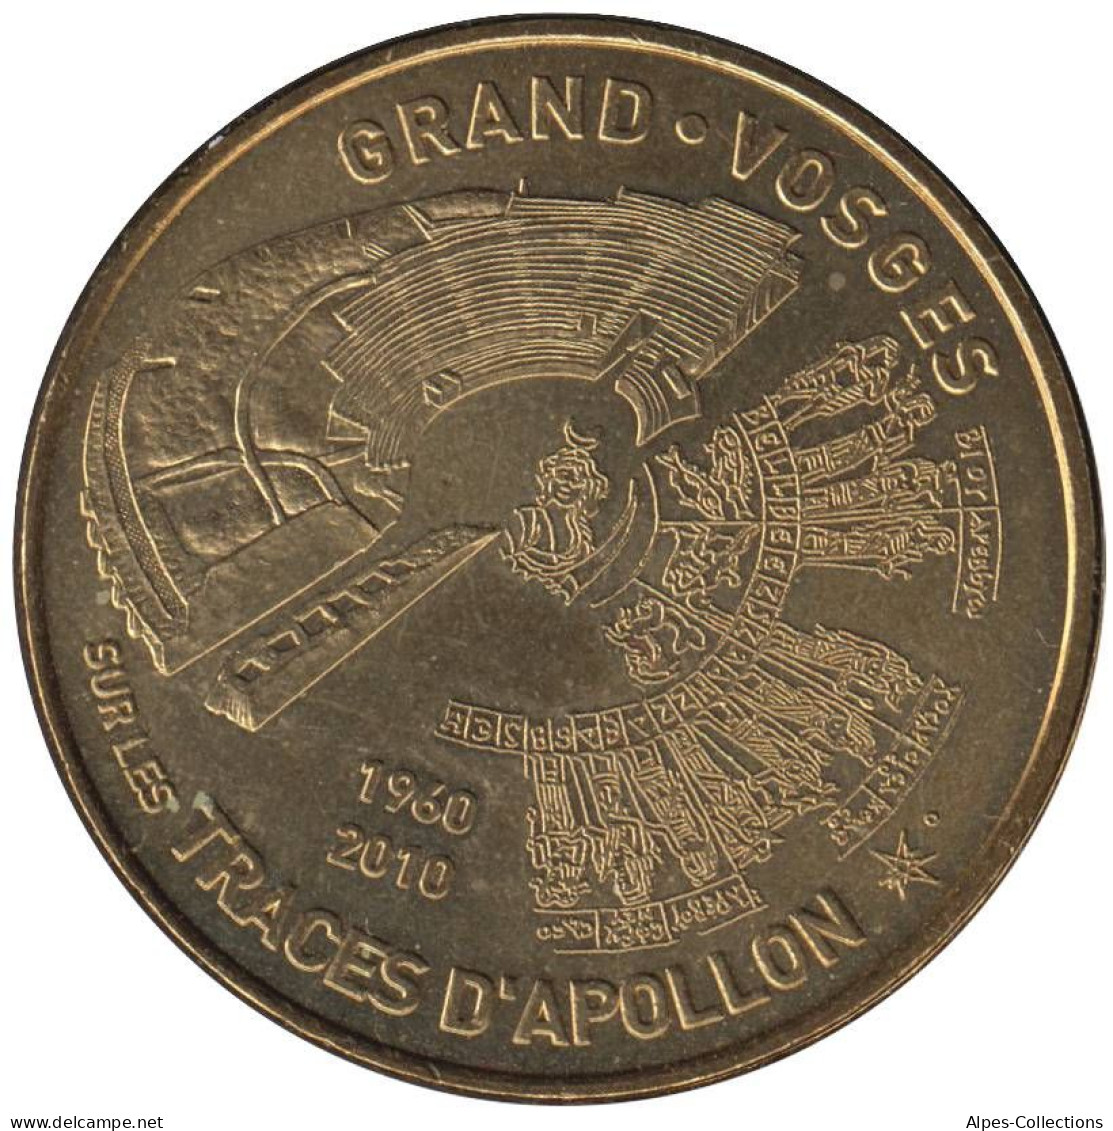 88-1049 - JETON TOURISTIQUE MDP - Grand - Sur Les Traces D'Apollon - 2010.1 - 2010